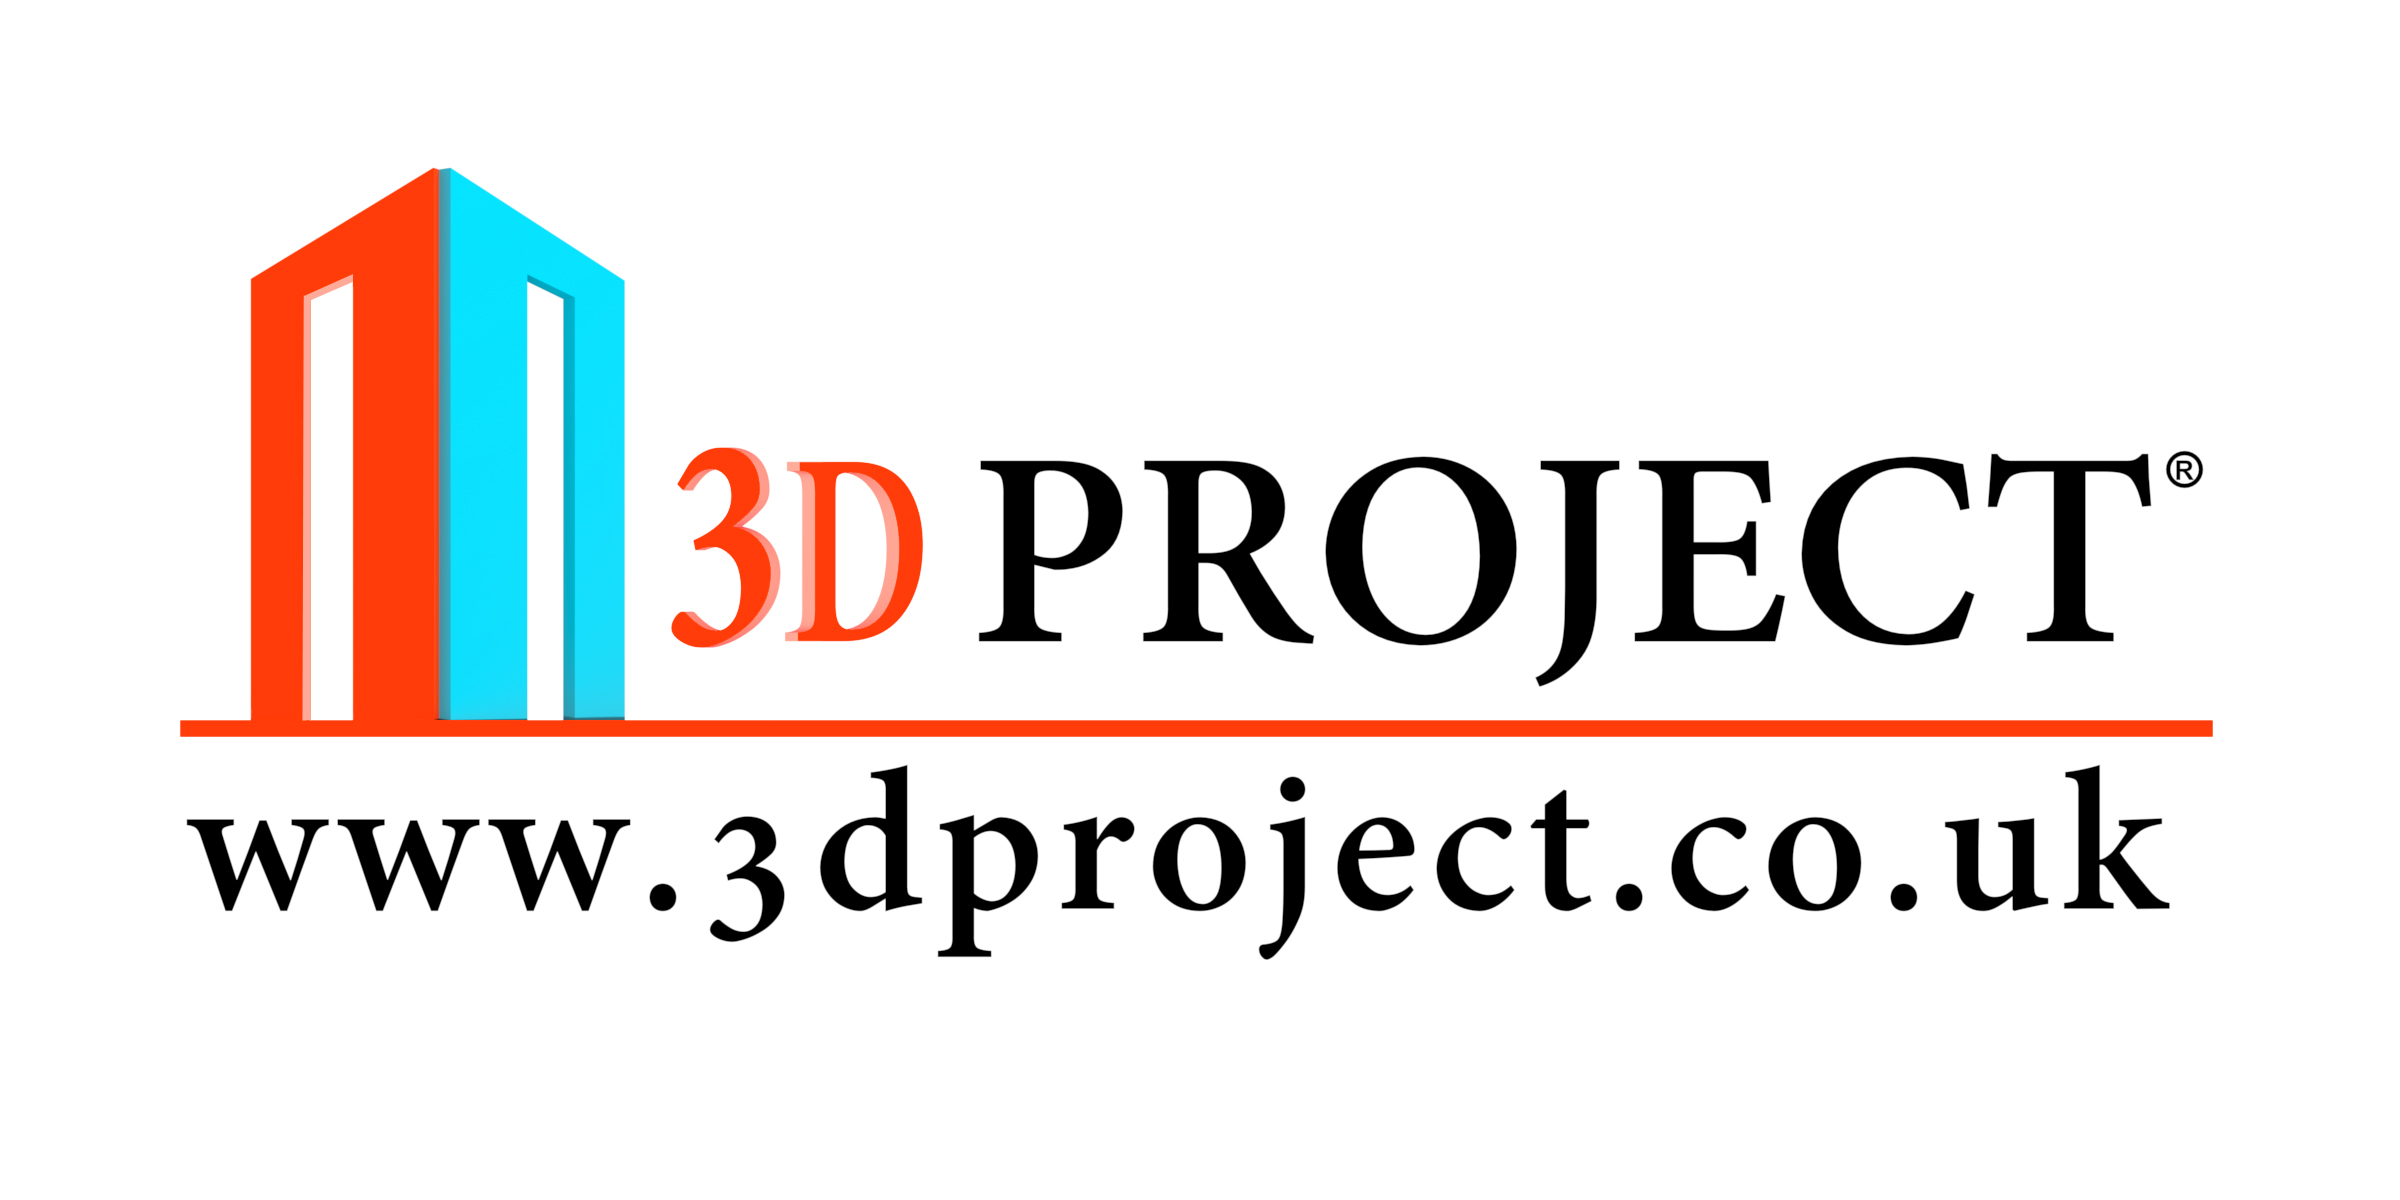 www.3dproject.co.uk